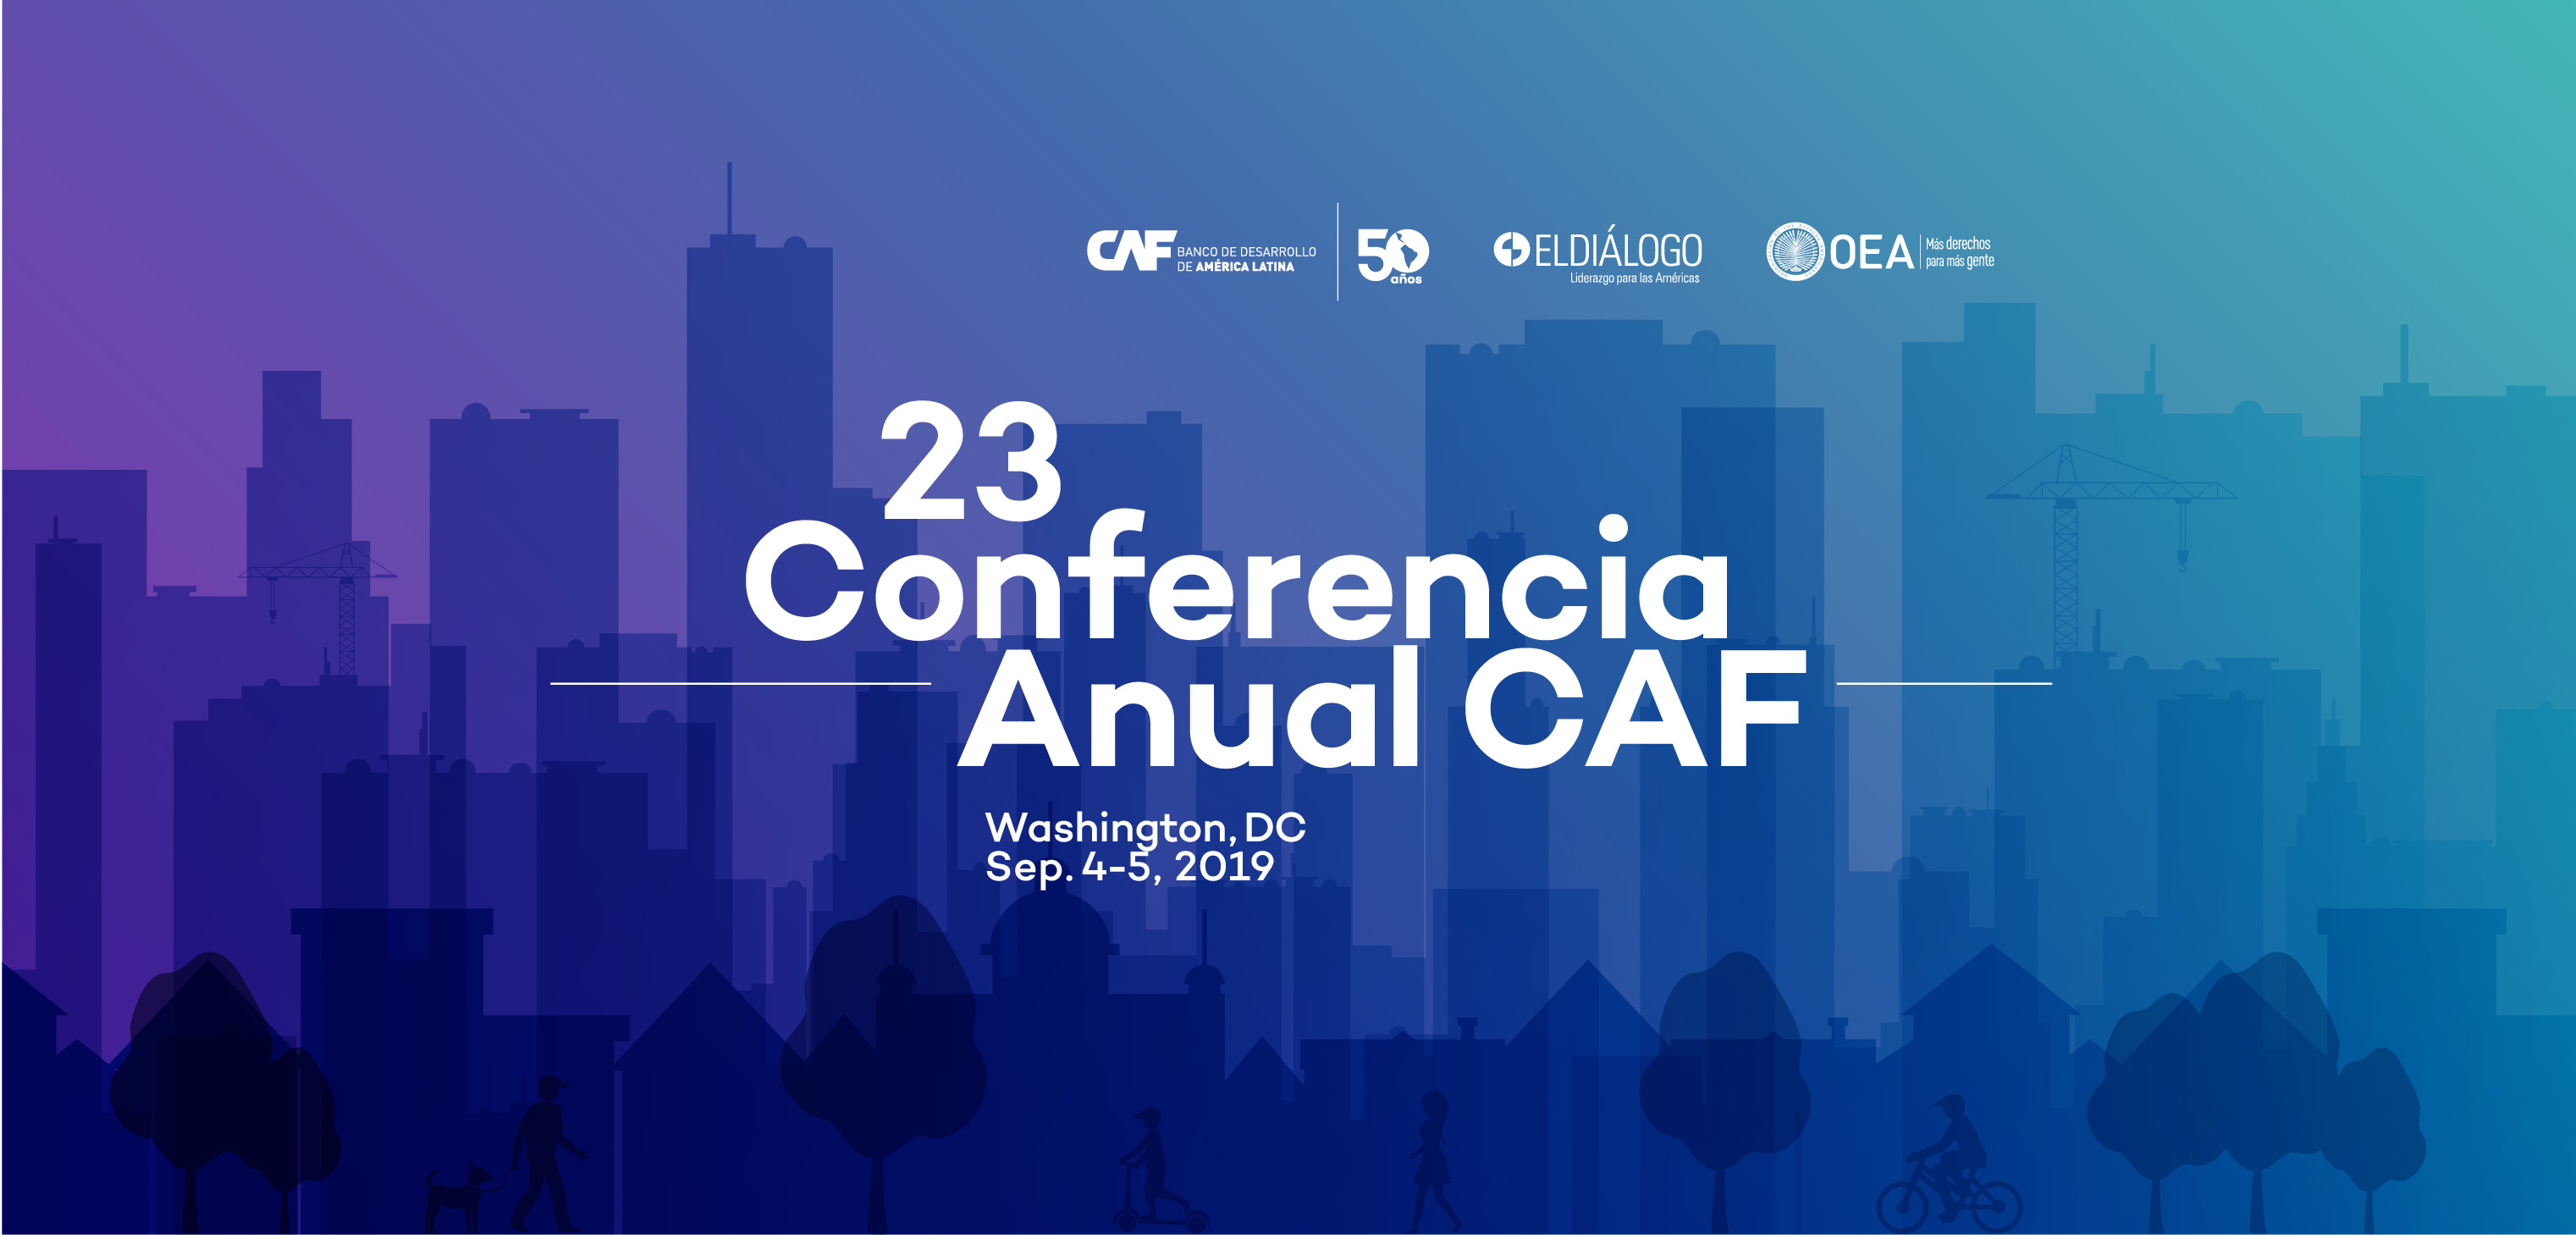 Comércio, eleições, desinformação e China marcarão a agenda da 23ª Conferência CAF